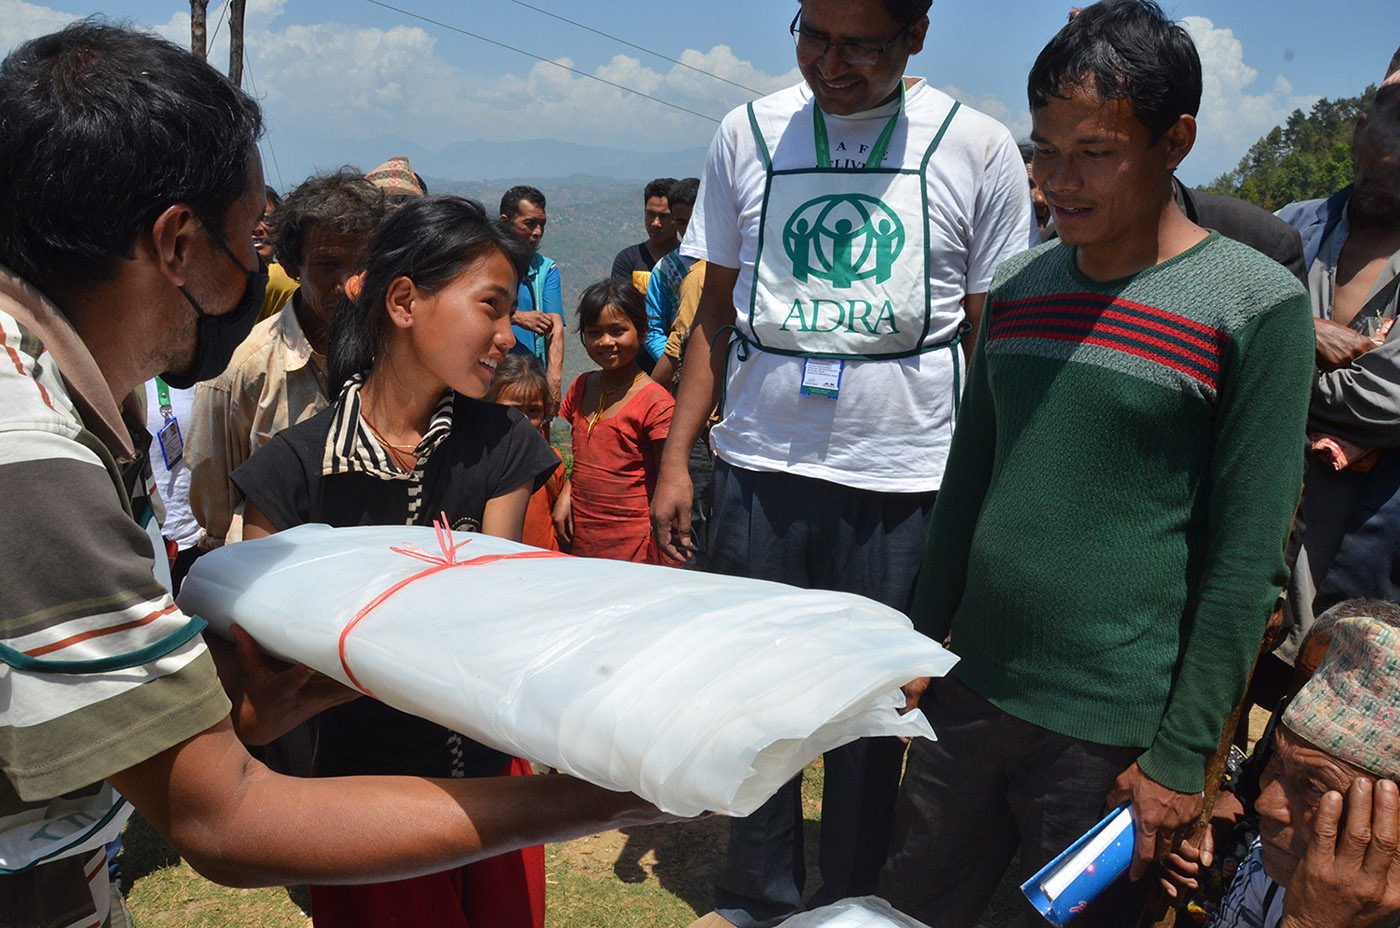 Agencia-humanitaria-adventista-pede-ajuda-apos-novo-terremoto-no-Nepal2